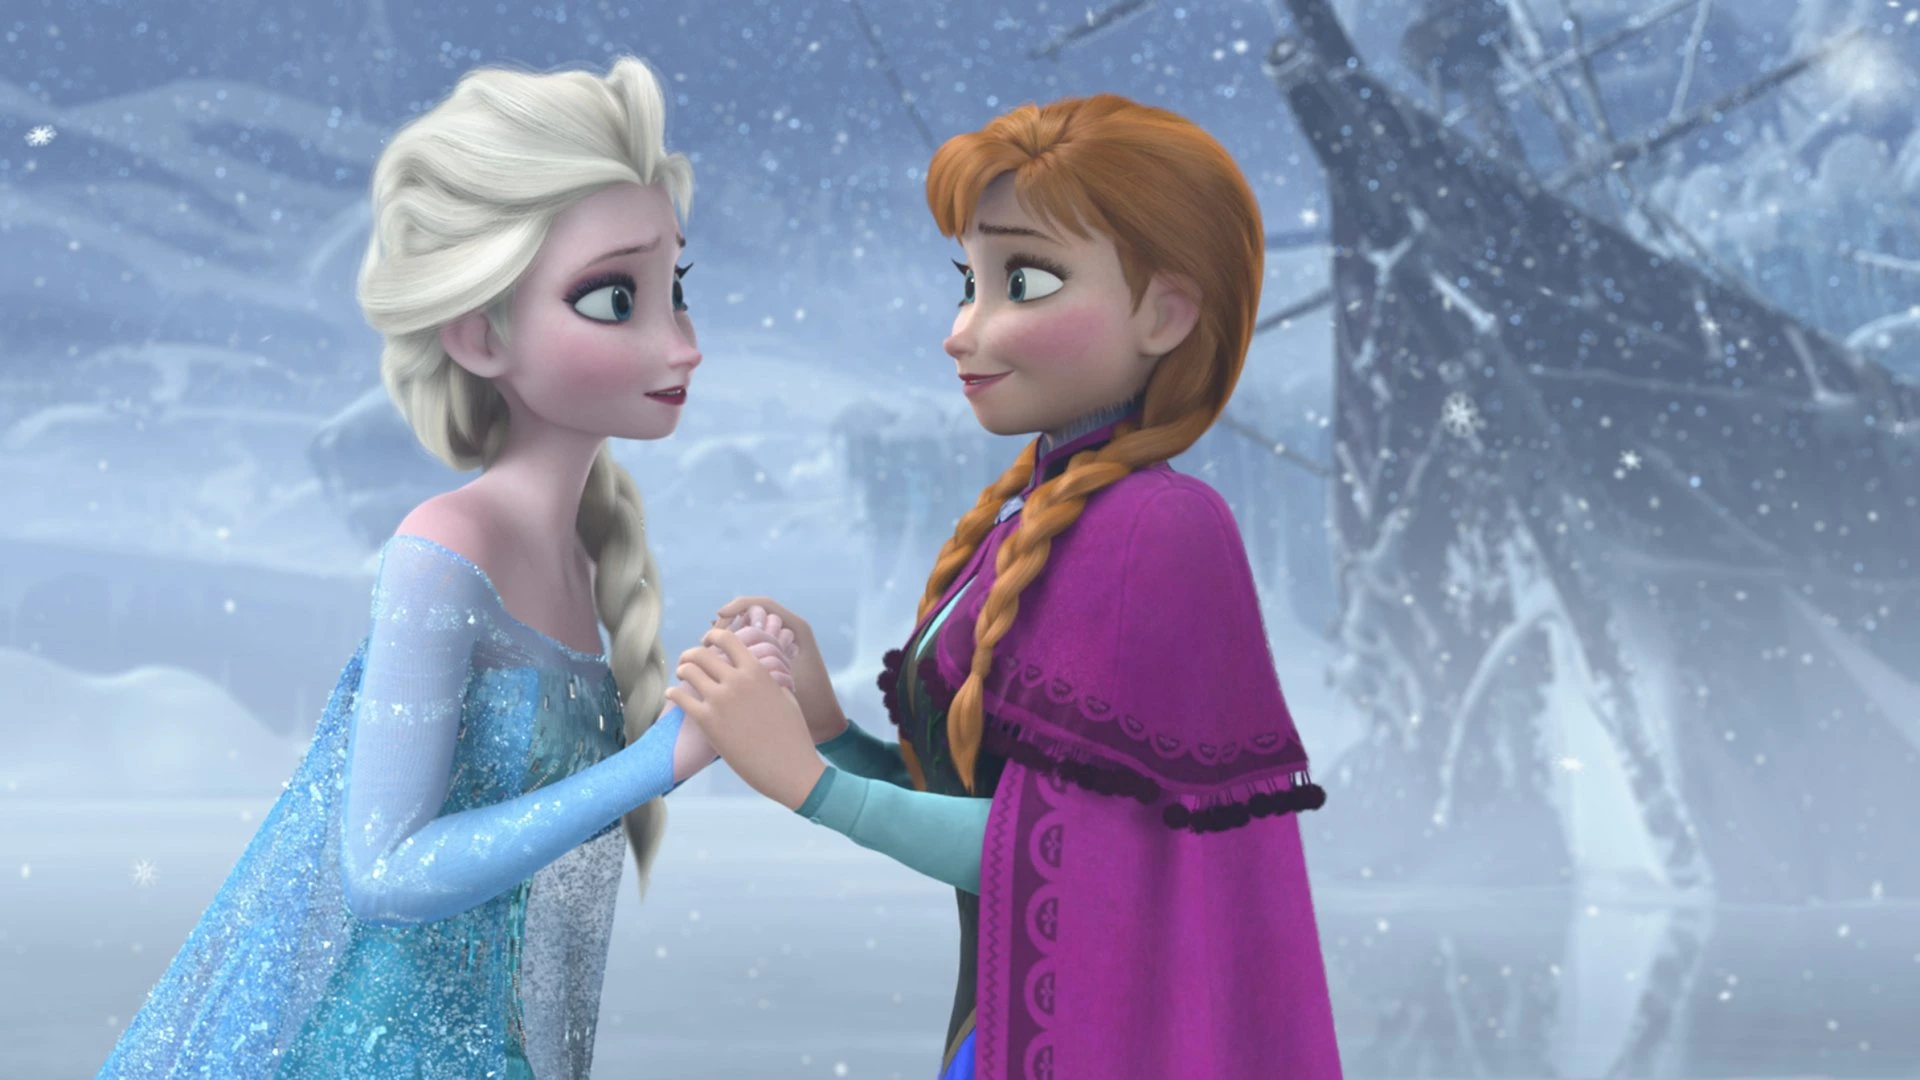 Frozen 3 tem possível data de estreia e trama - Observatório do Cinema